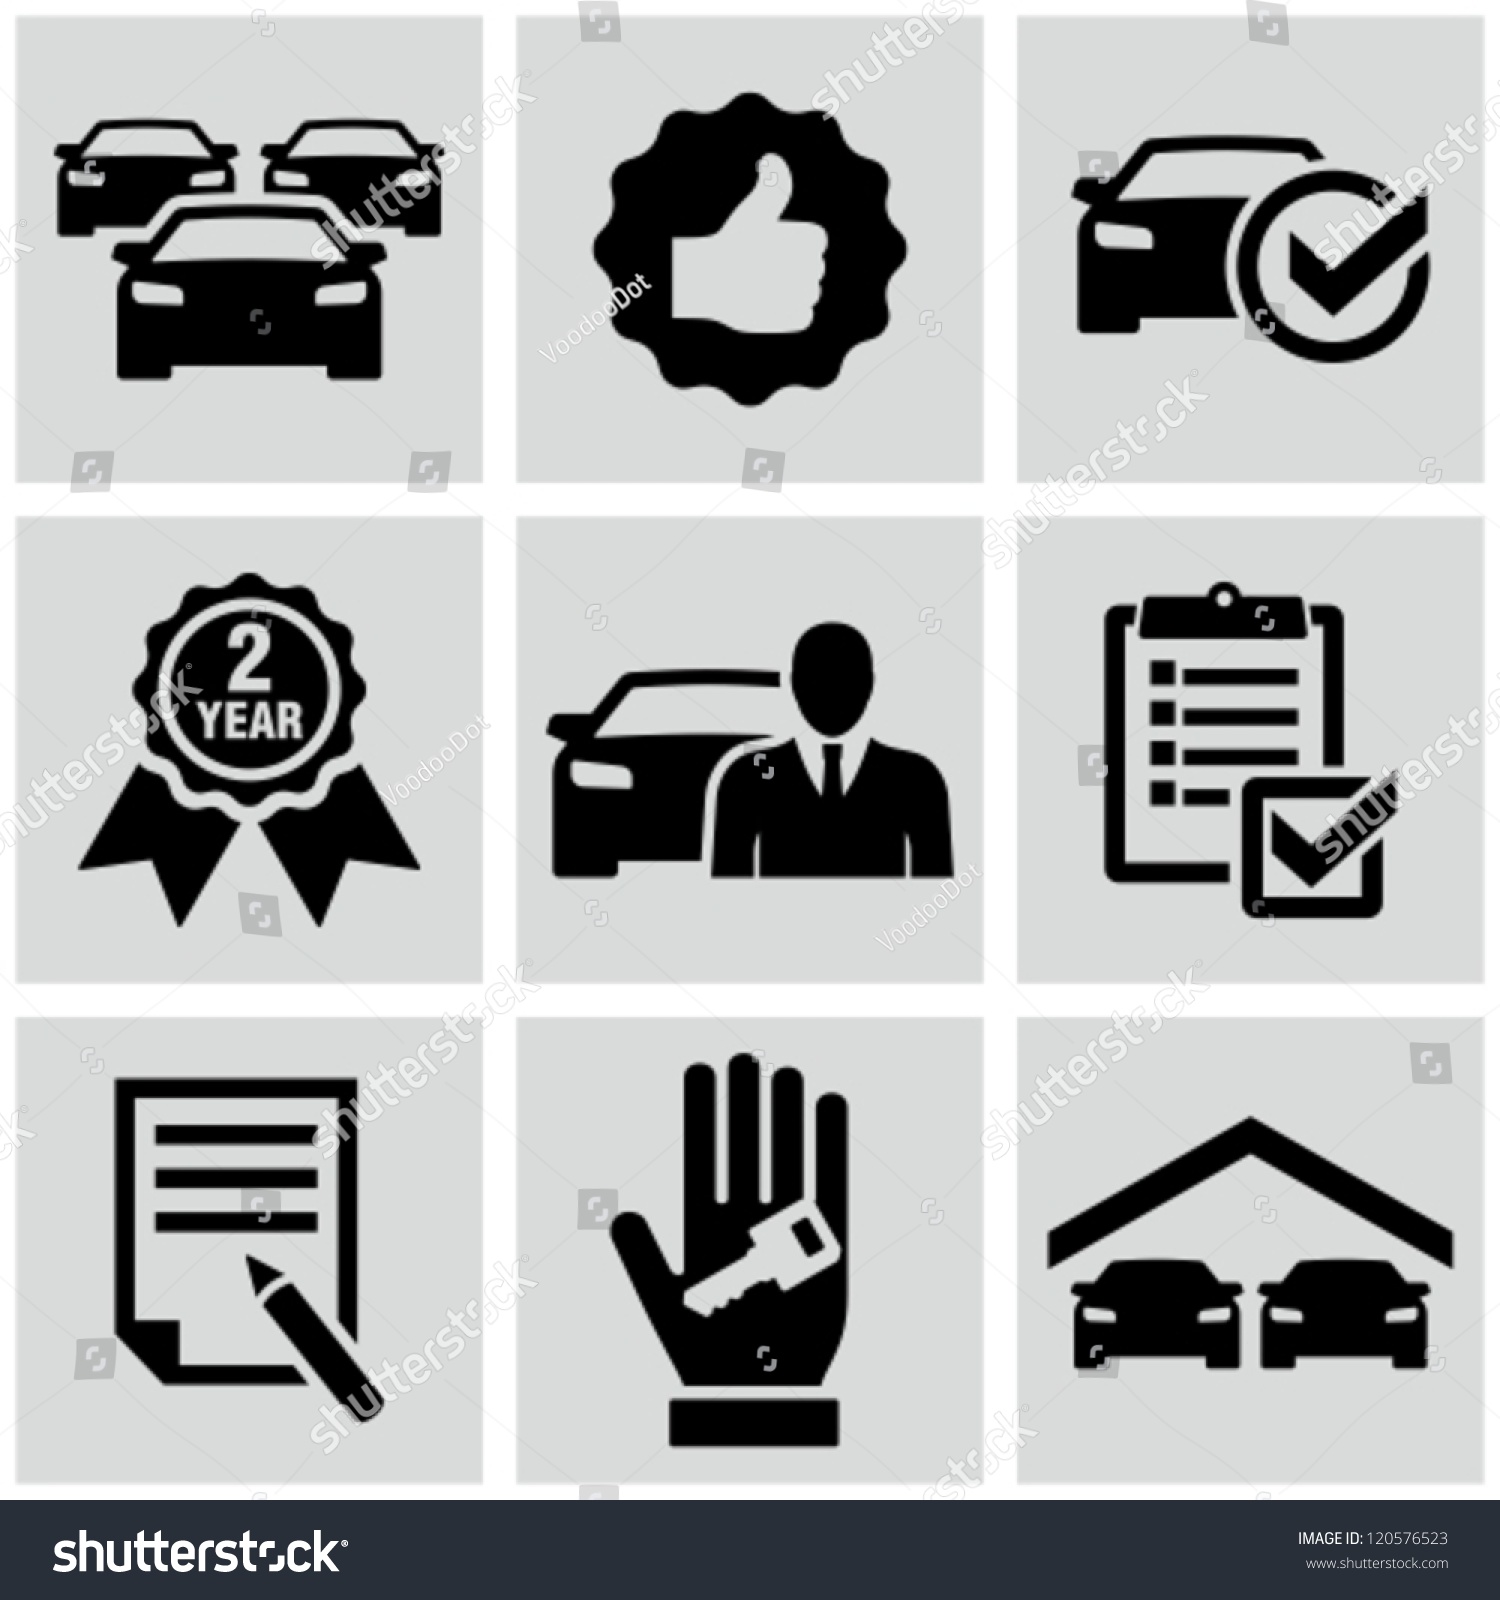 Car dealership icons #120576523